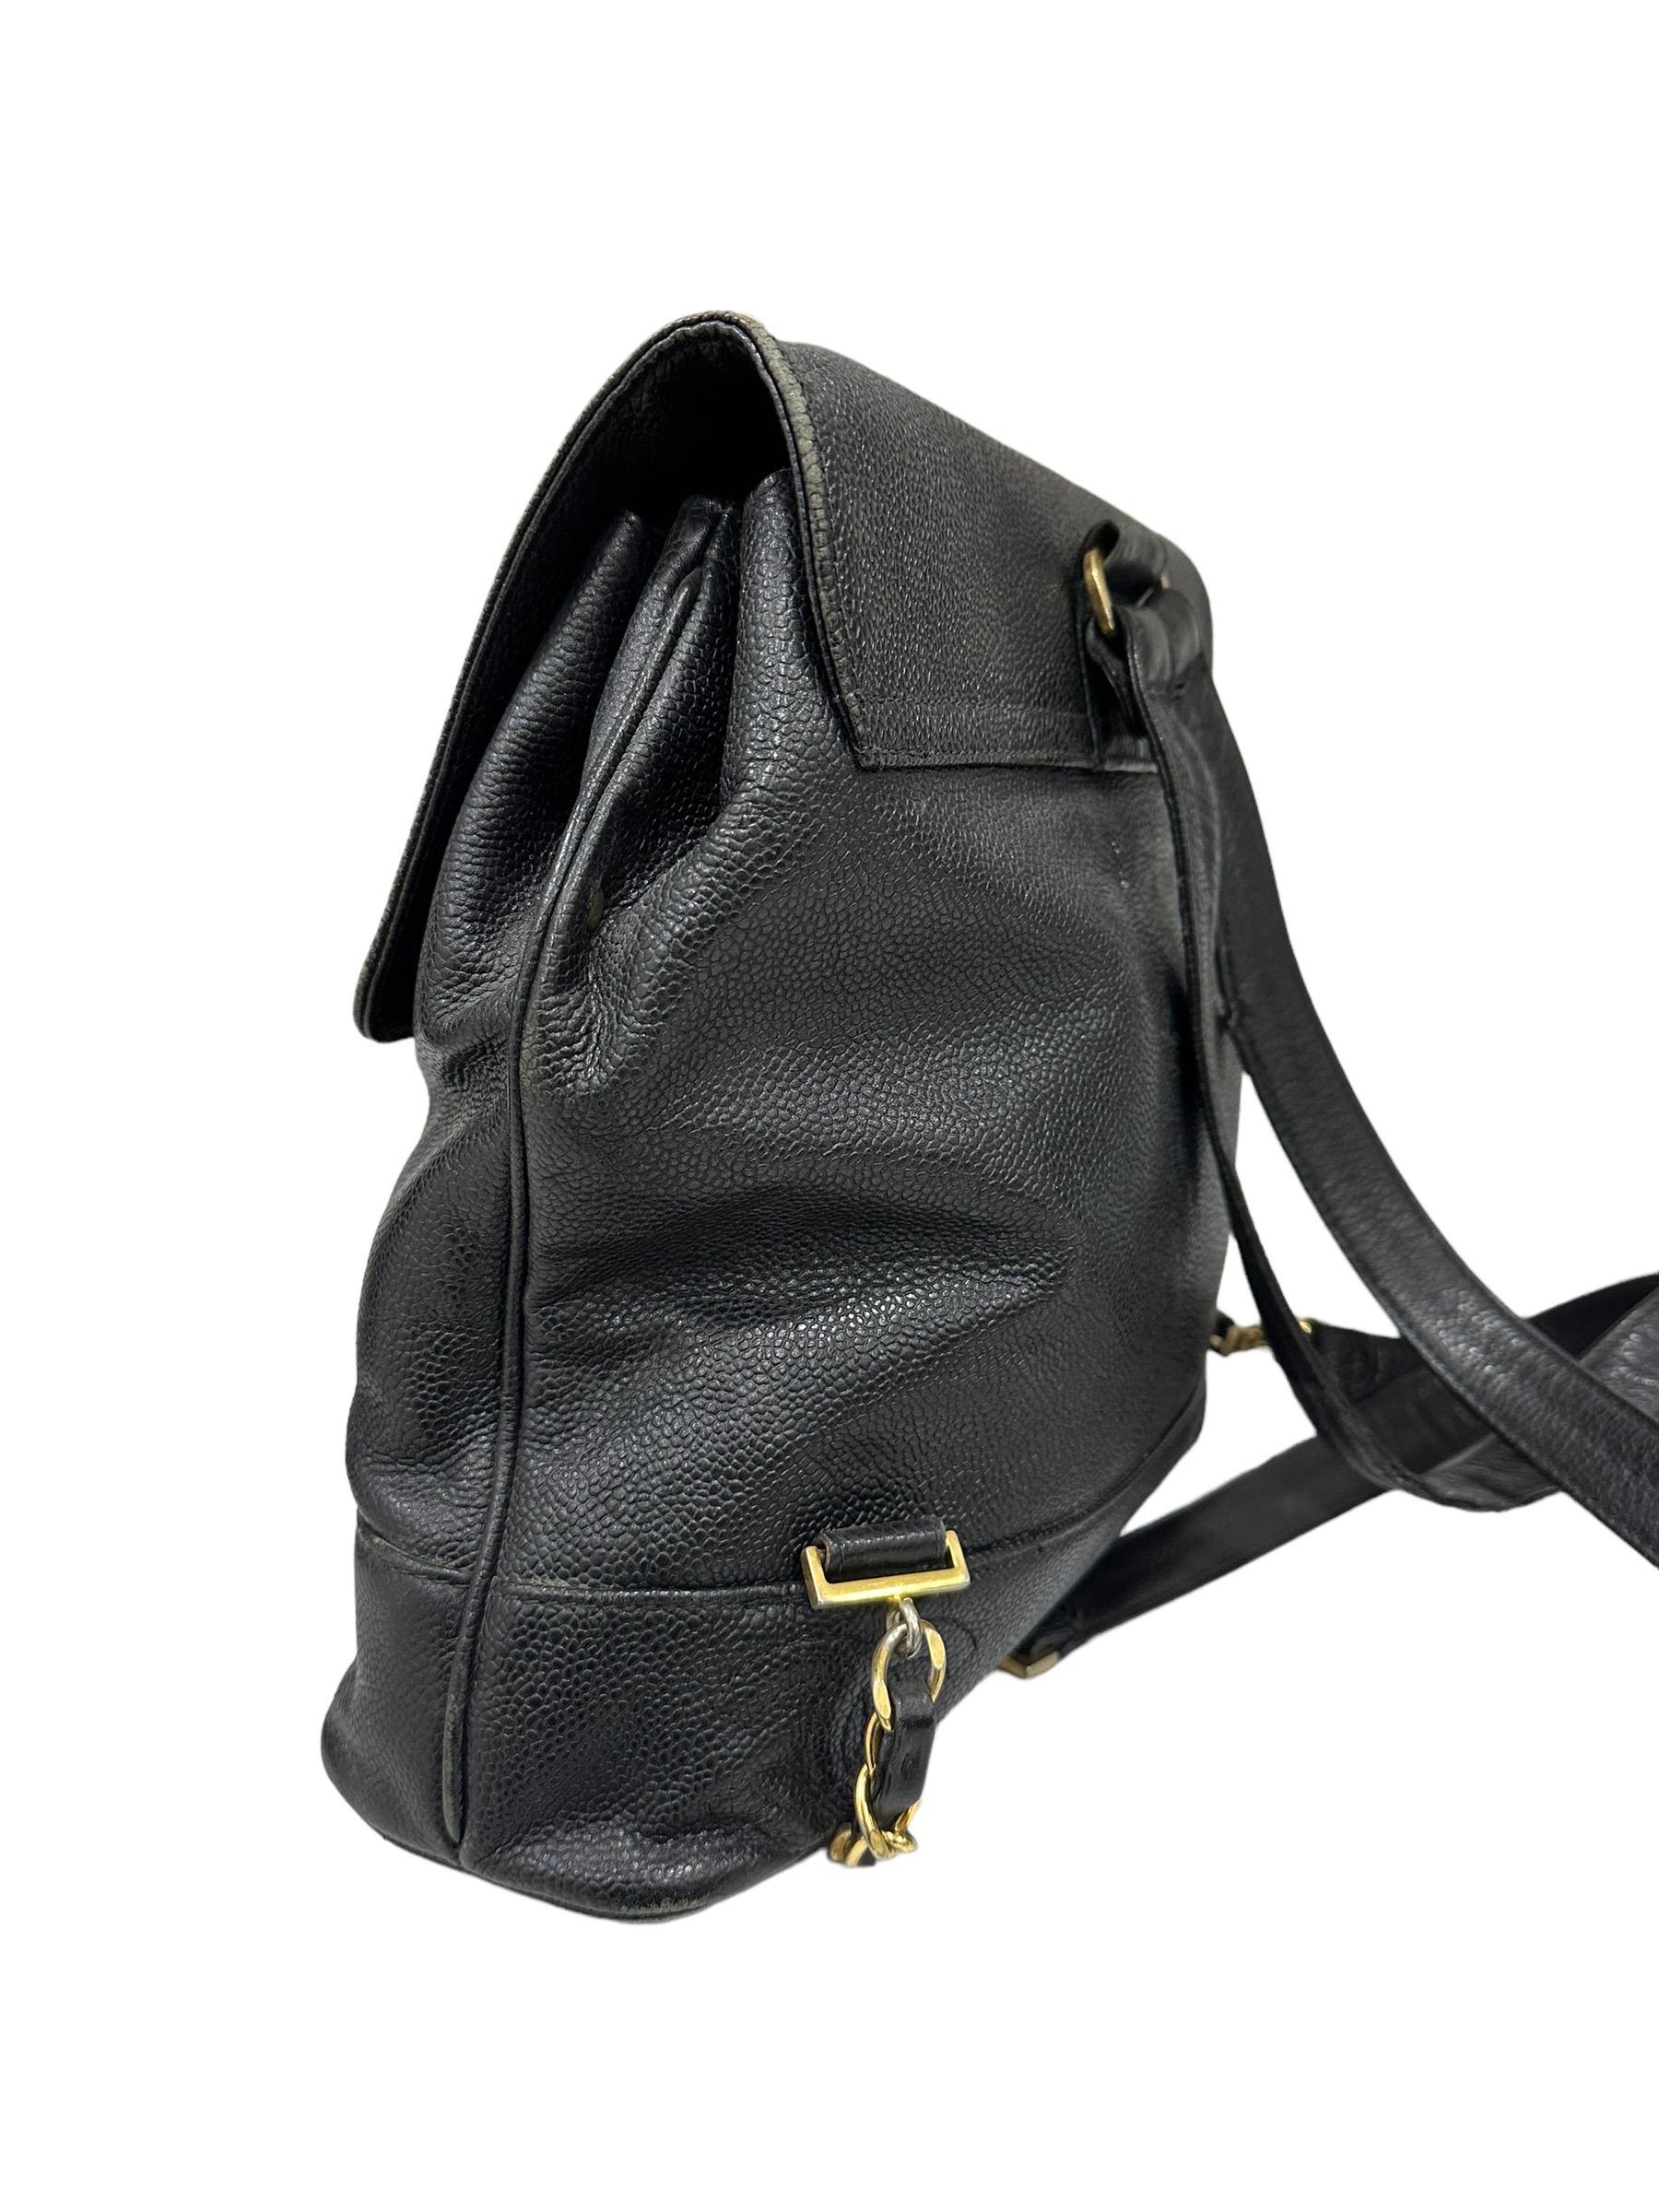 1997 Chanel Black Leather Vintage Backpack  2